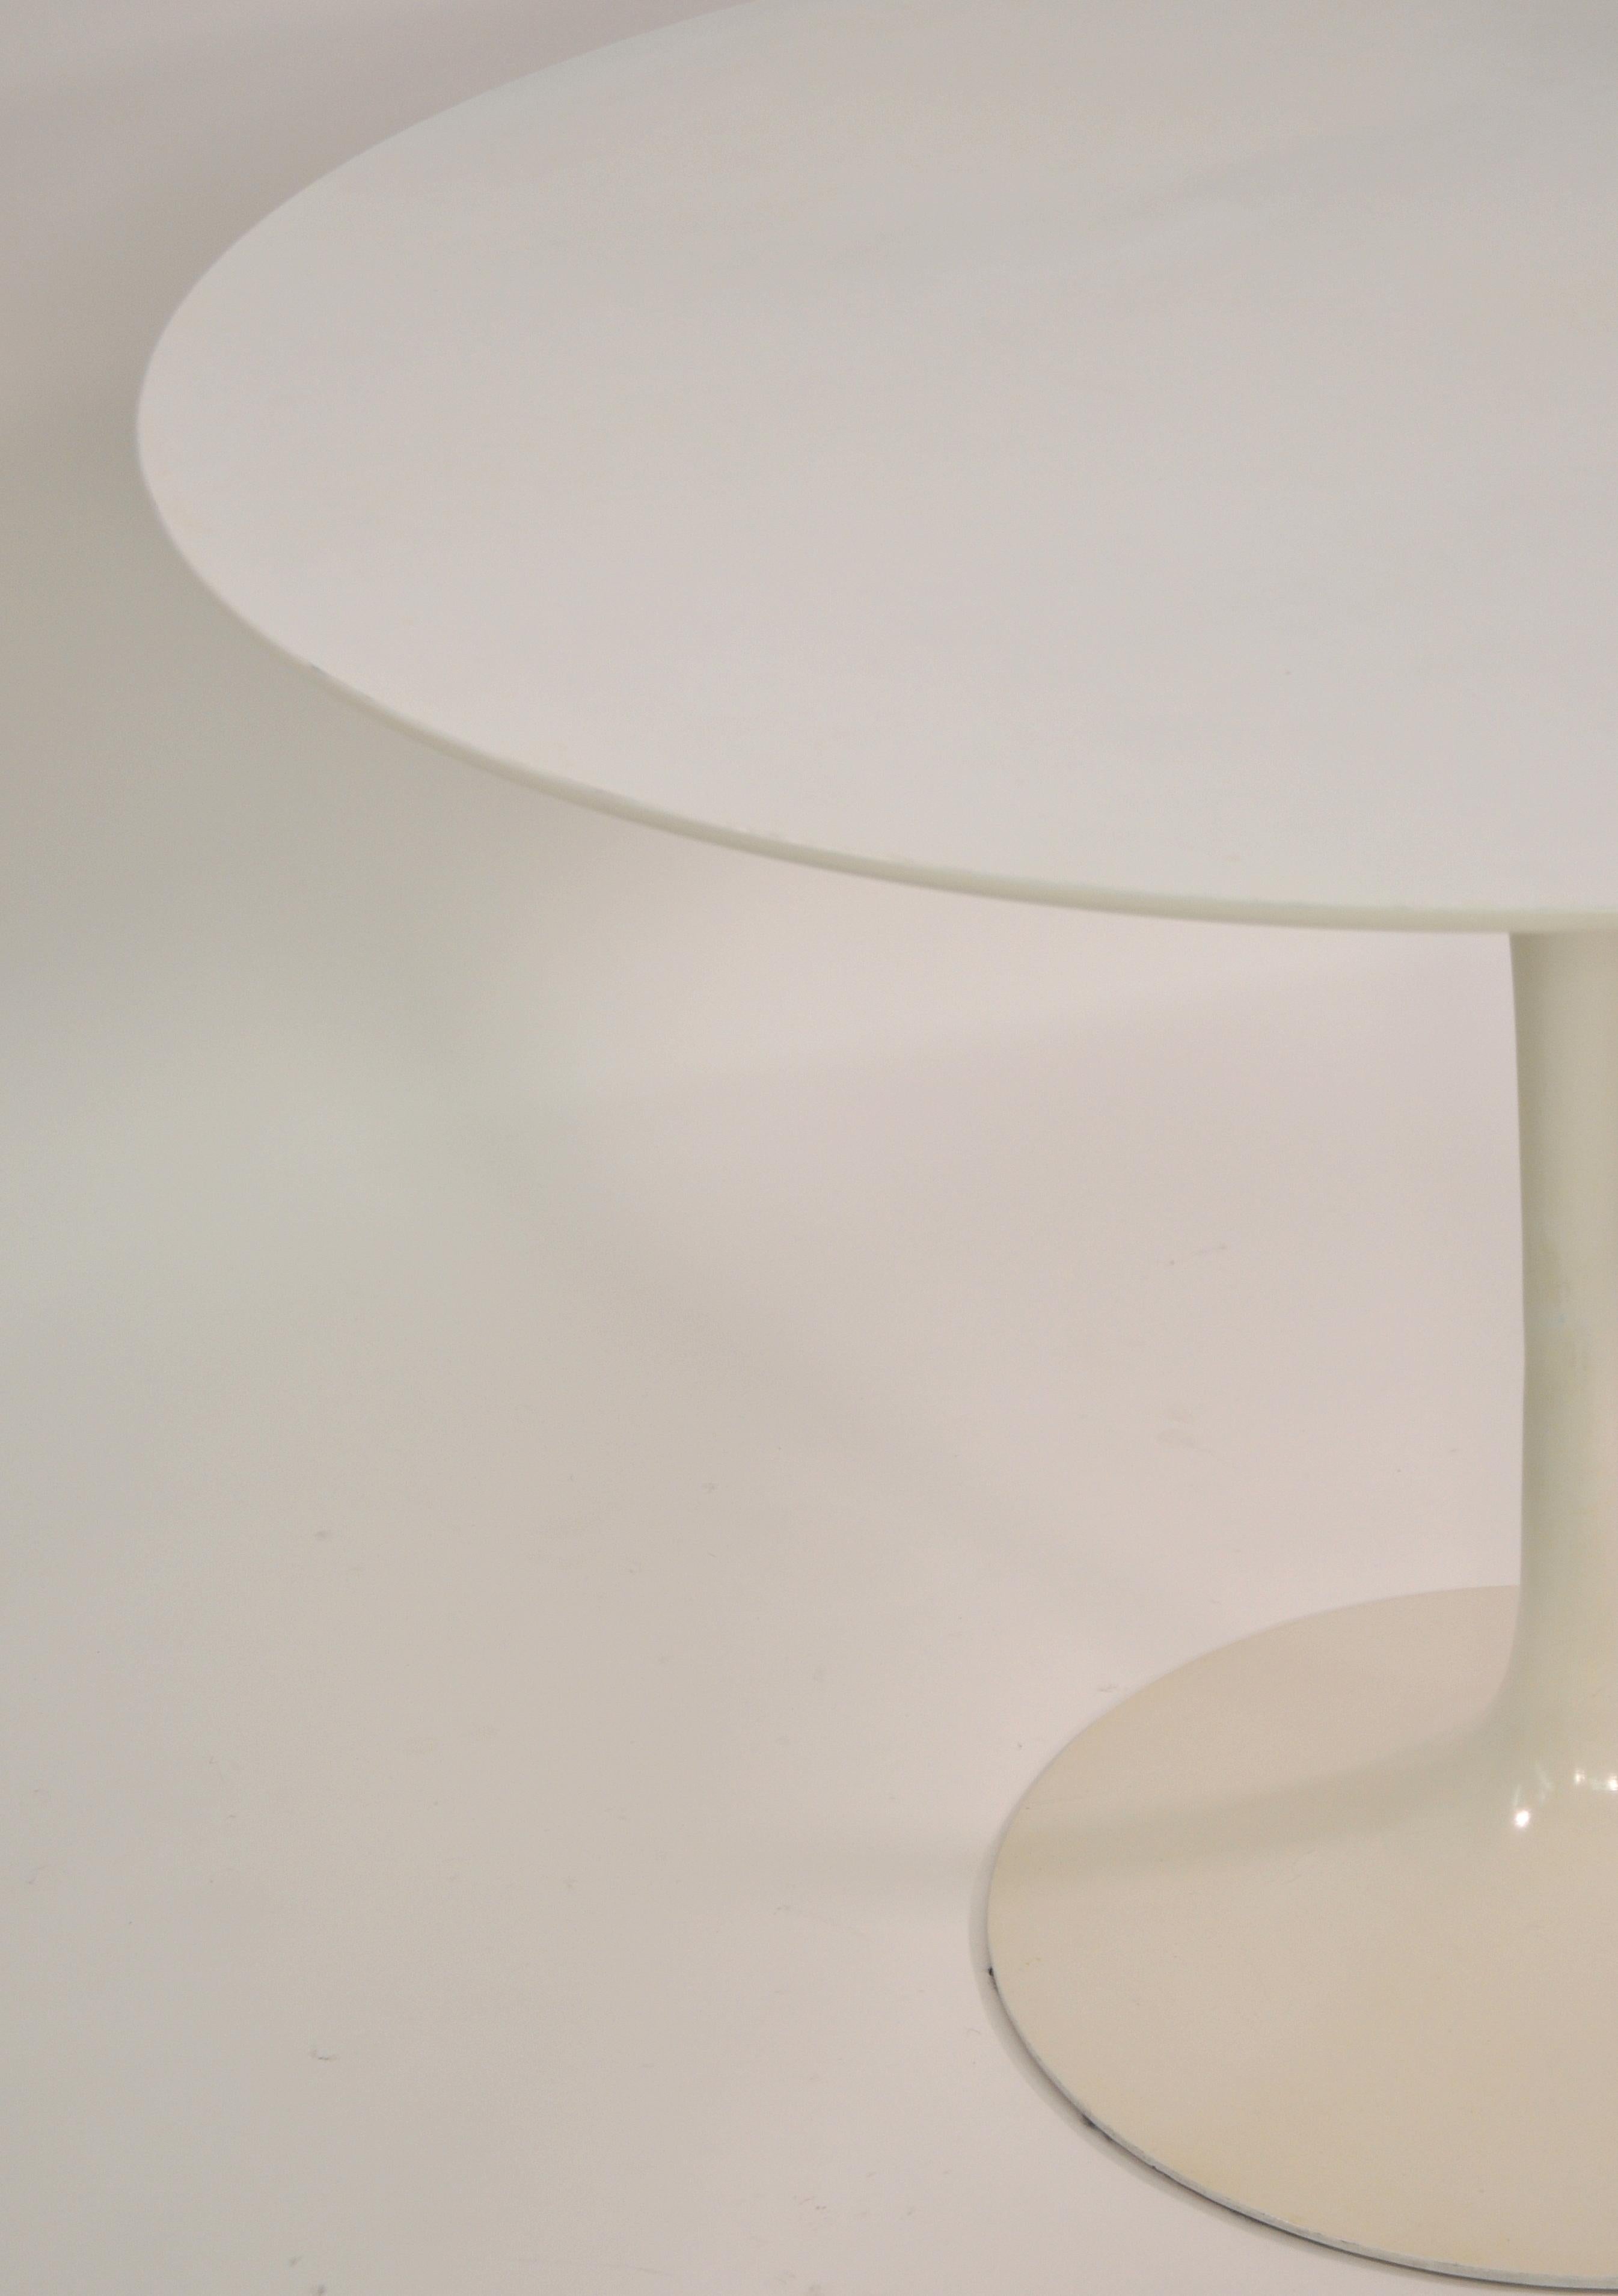 Eero Saarinen for Knoll Tulip Dining Table 1